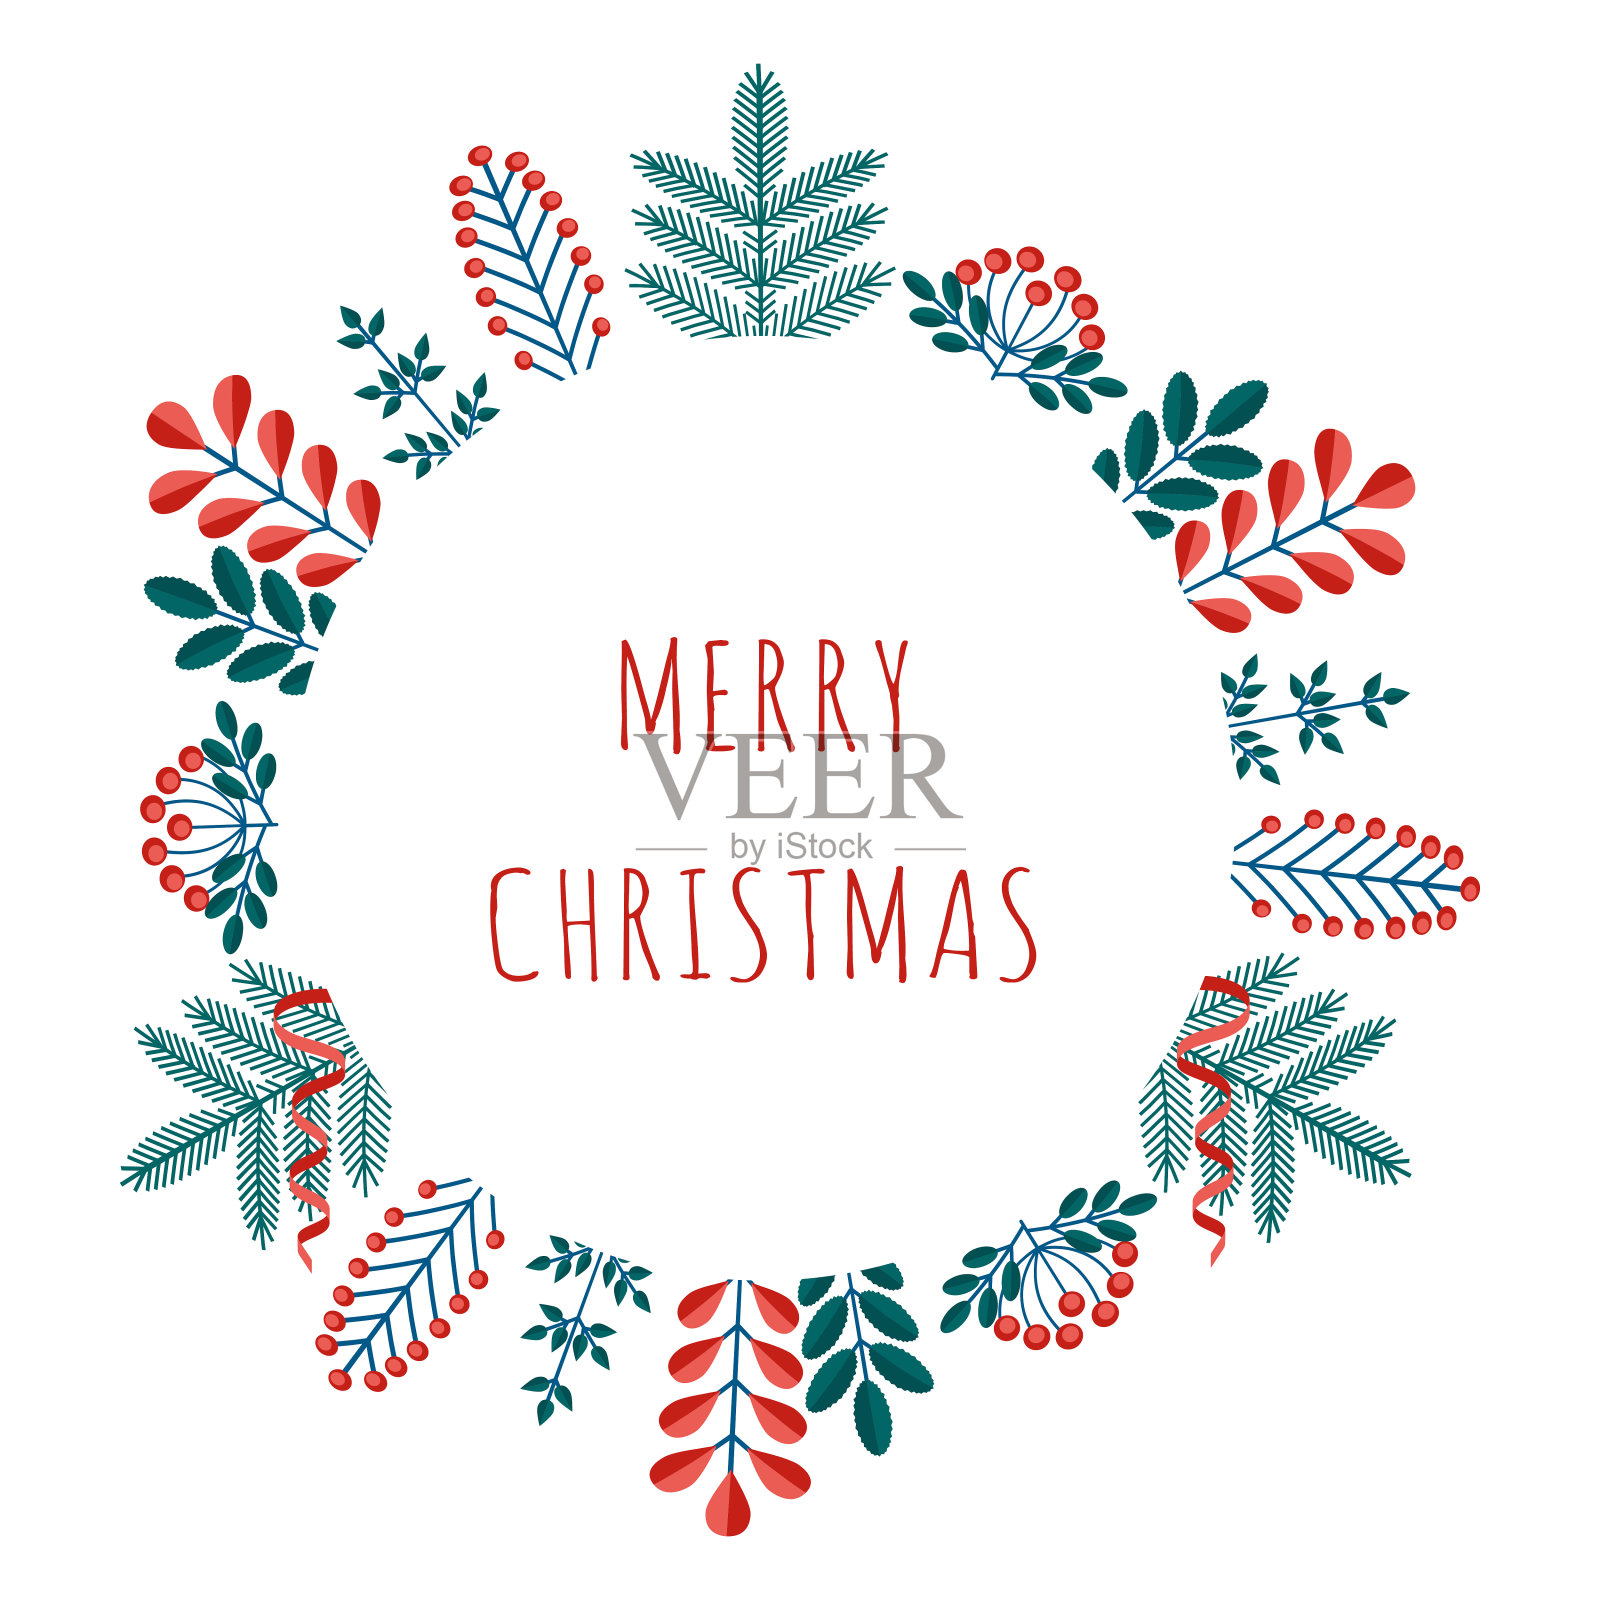 圣诞快乐节日快乐贺卡与冬季植物相框在现代扁平风格。Stock vector插图与植物符号的节日-松树，圆锥体，树枝，浆果在红色，绿色的颜色。设计元素图片